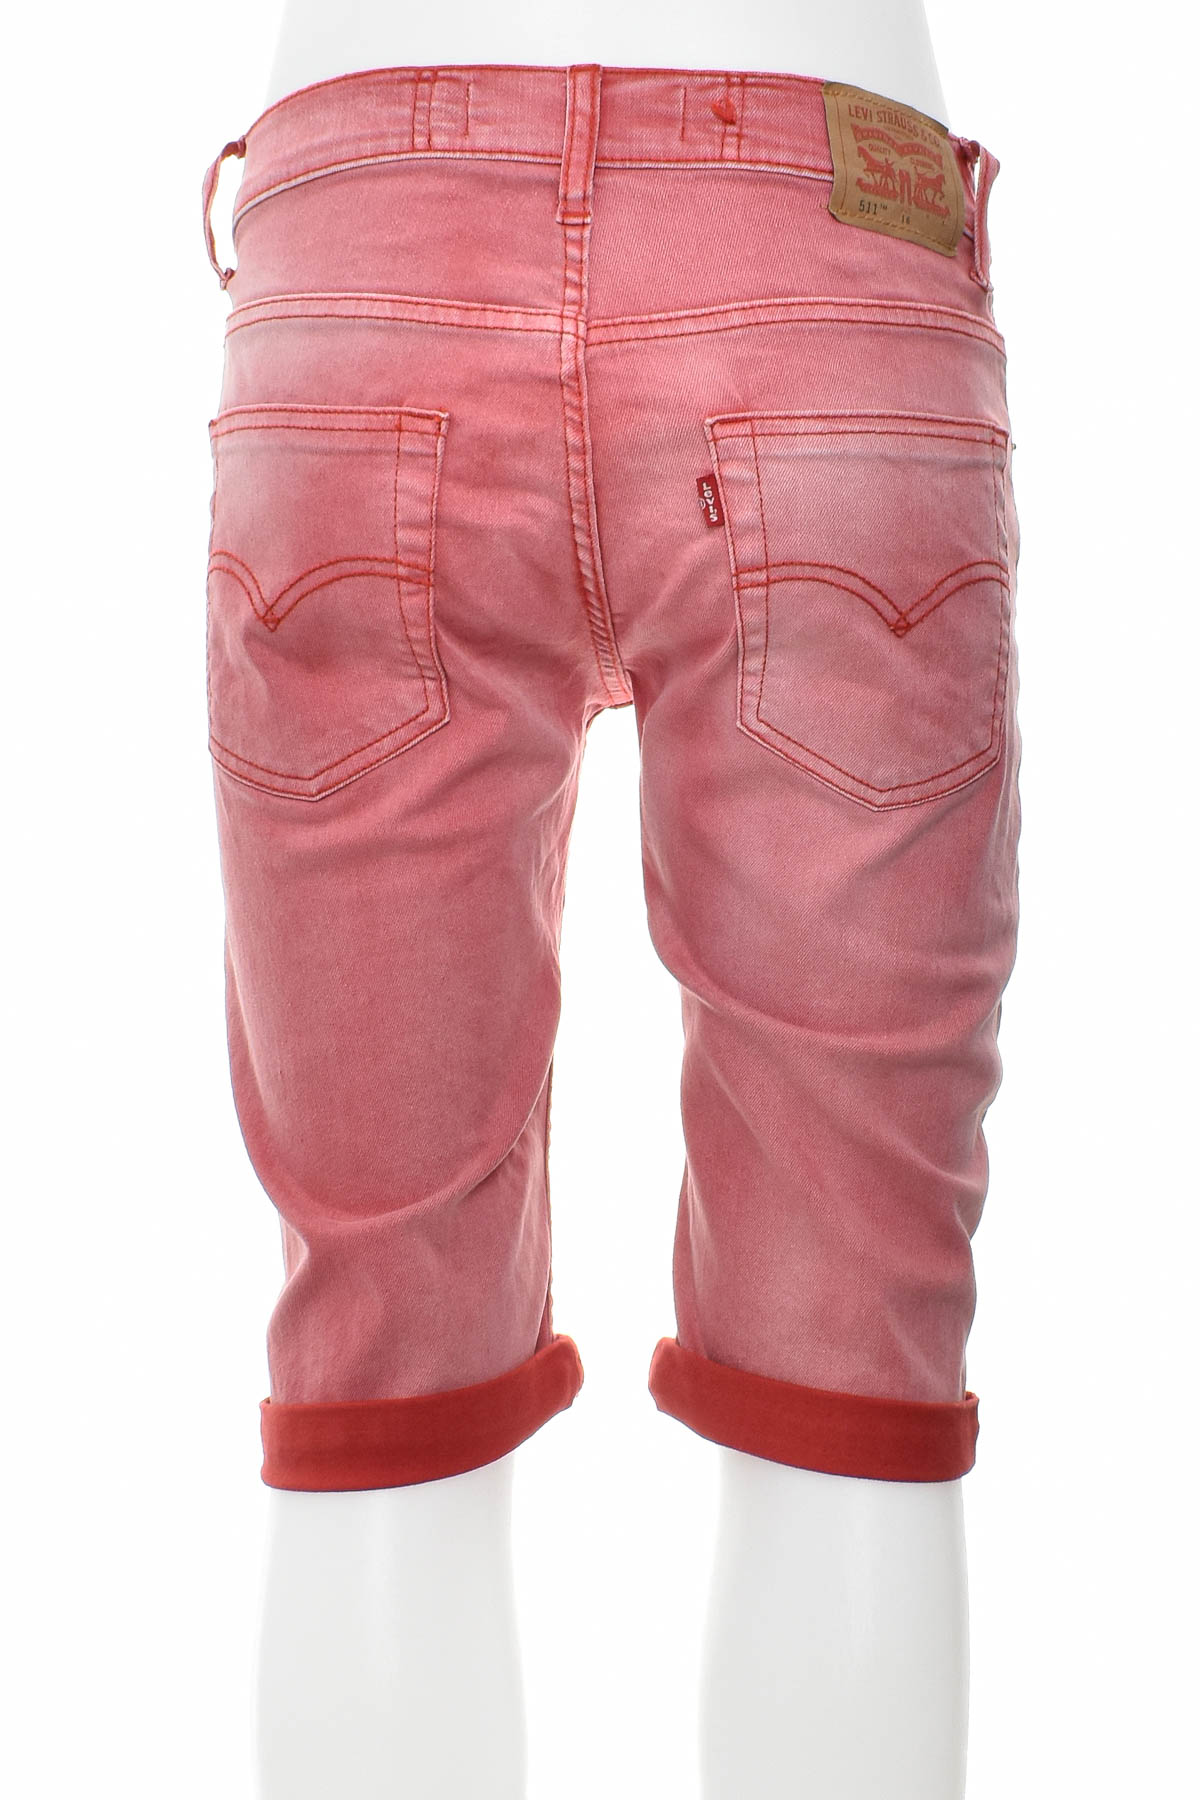 Pantaloni scurți pentru băiat - LEVI'S - 1